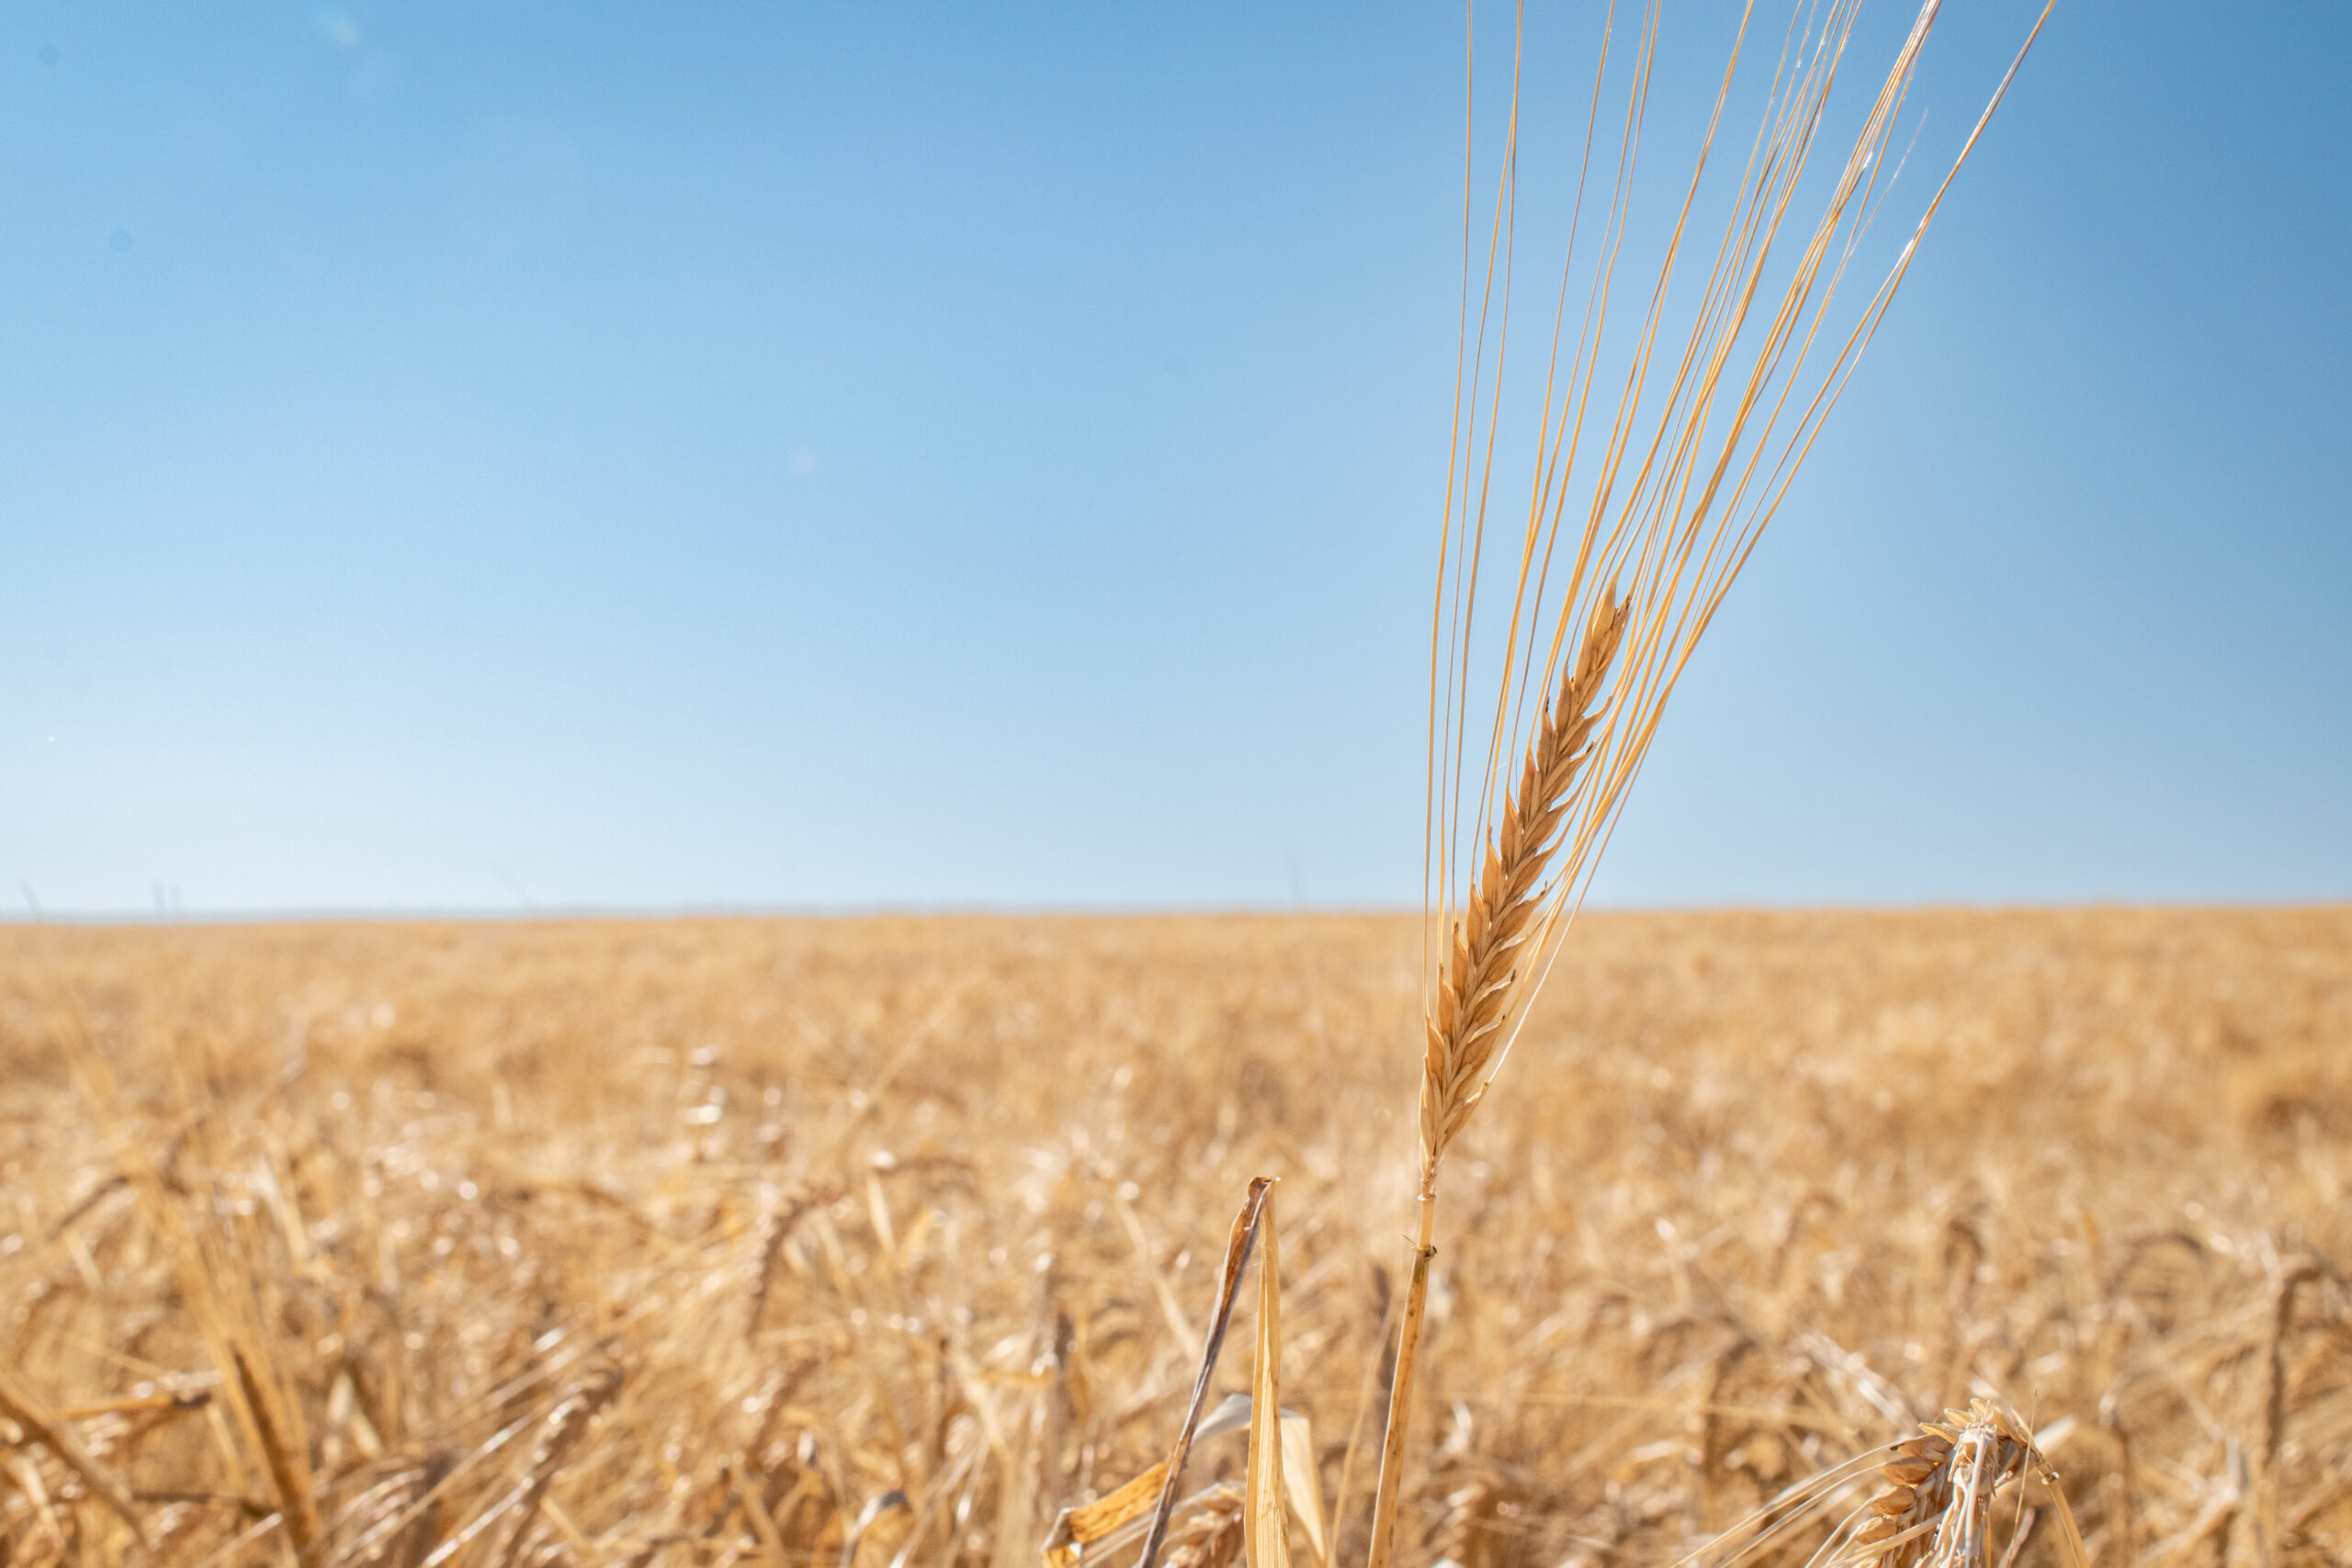 Ripe barley in a field near Palouse, Washington